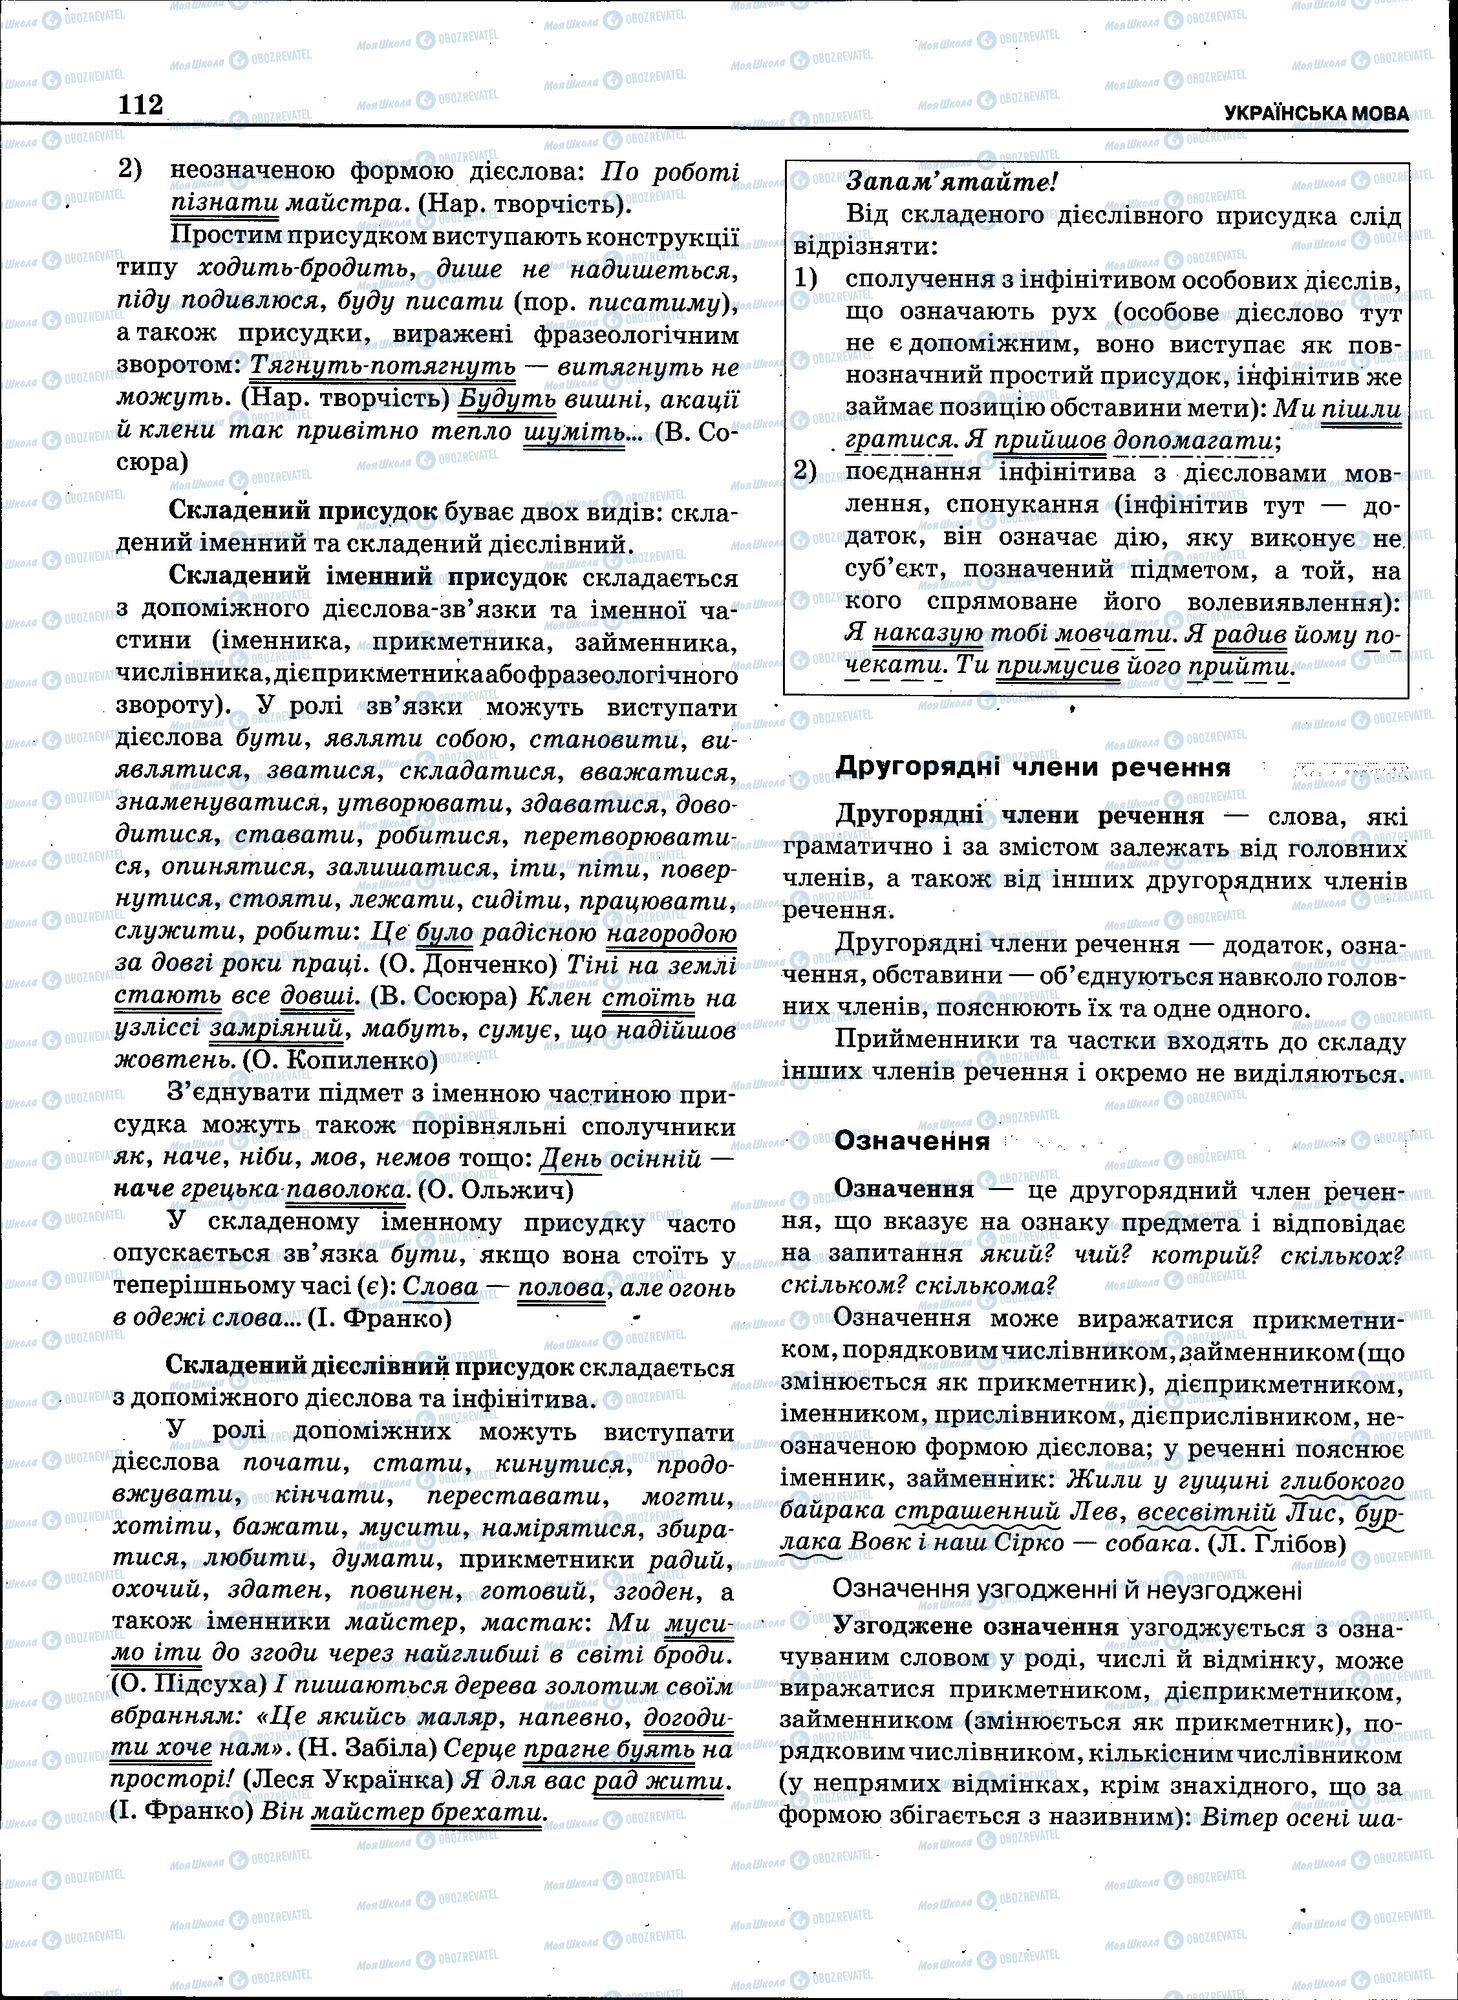 ЗНО Укр мова 11 класс страница 110